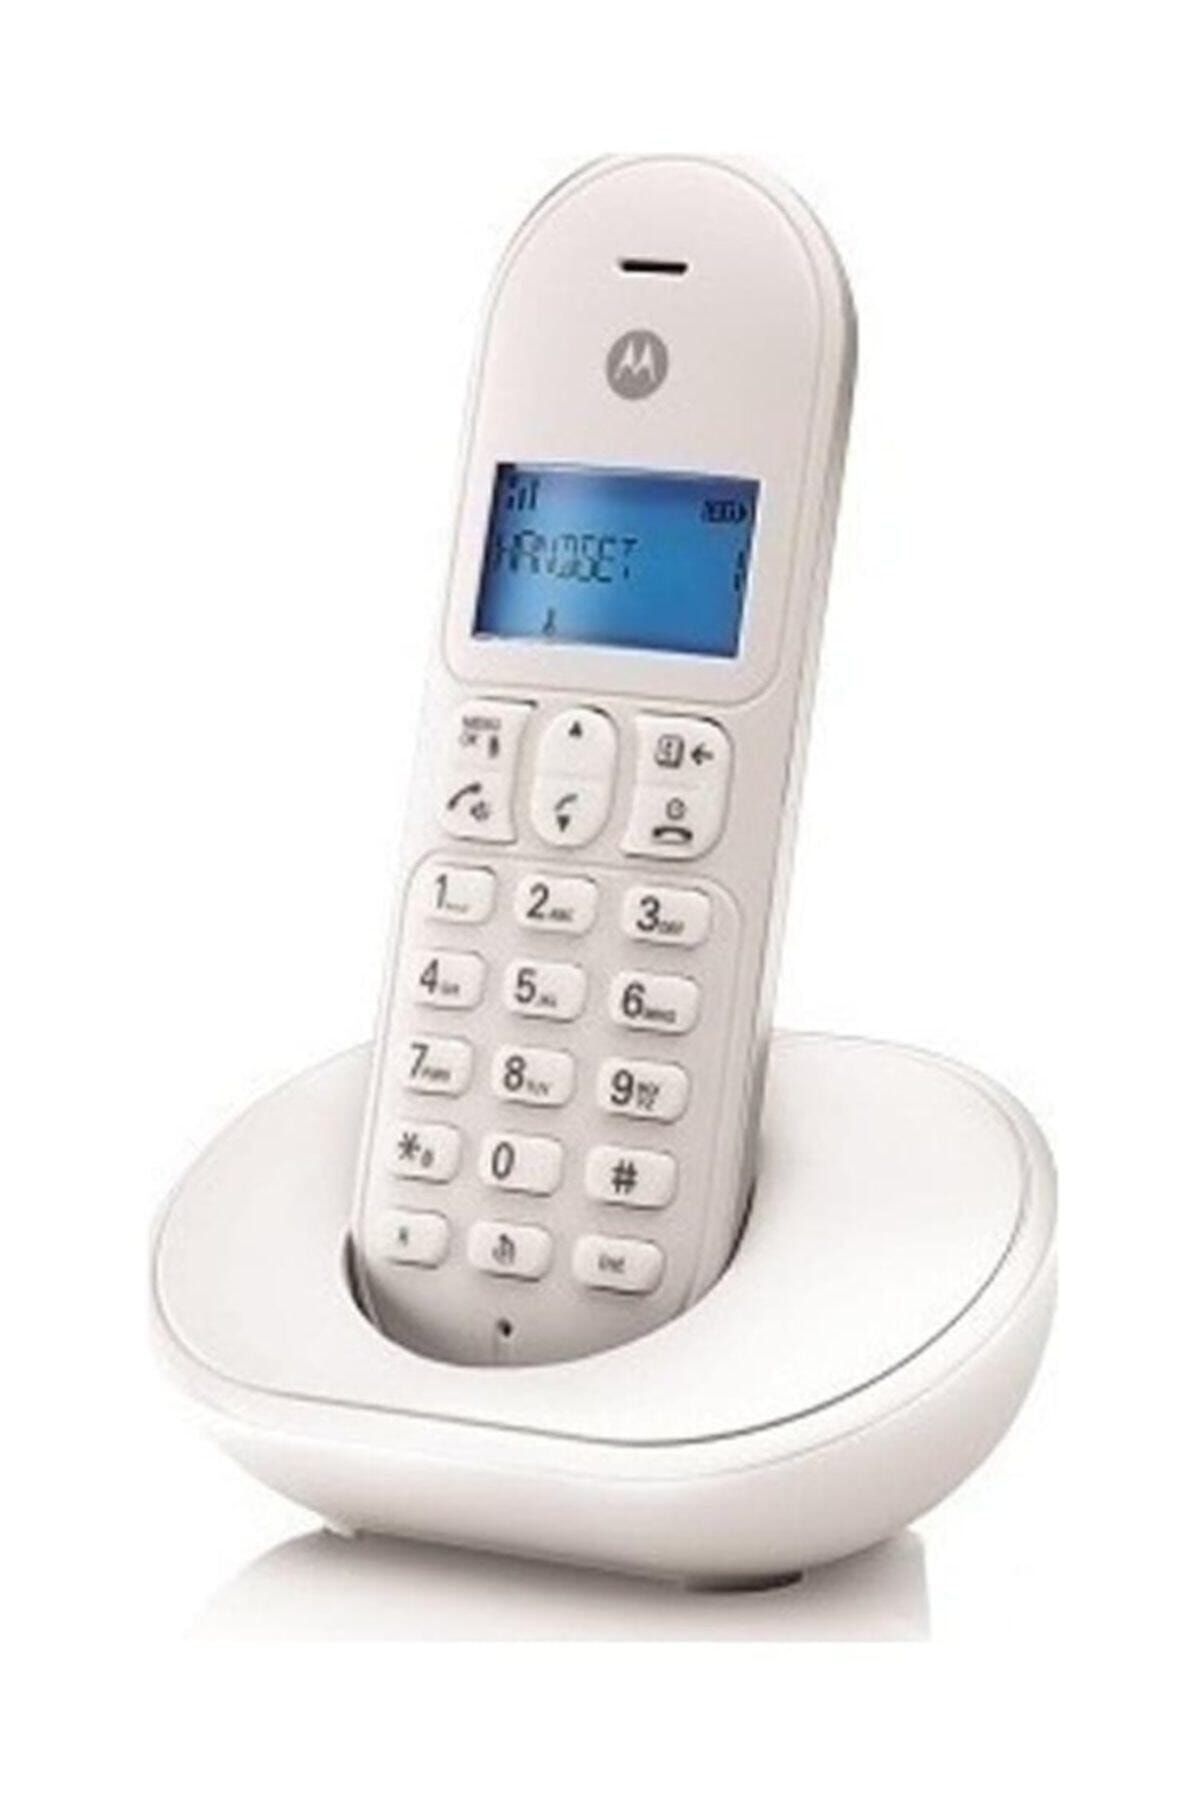 Motorola Arayan Numarayı Gösteren T101 Model Masa Telefonu Kablosuz (telsiz) Telefon Beyaz Renk